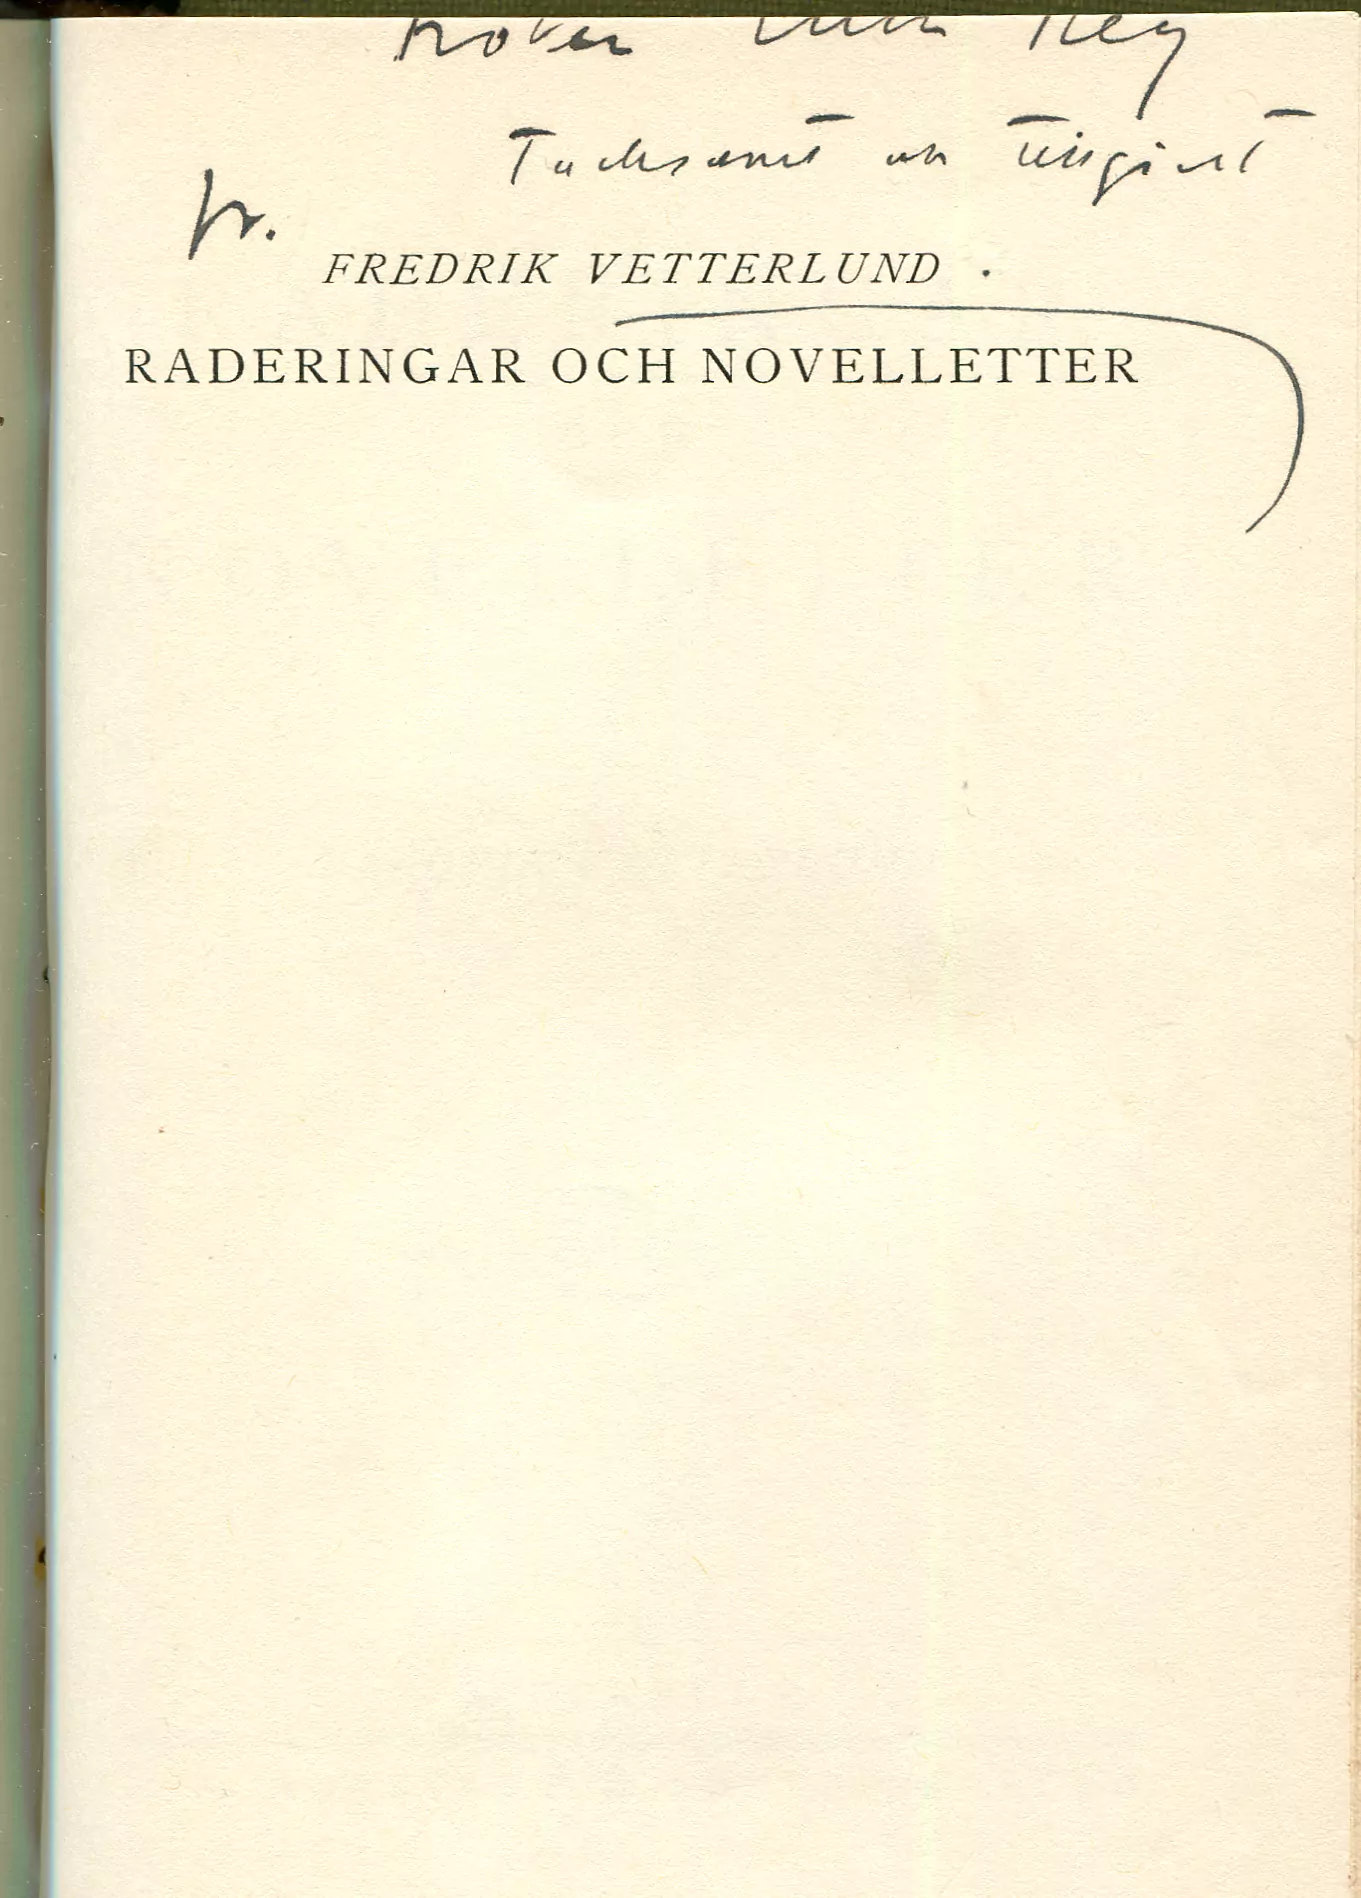 Raderingar och novelletter, Stockholm 1916